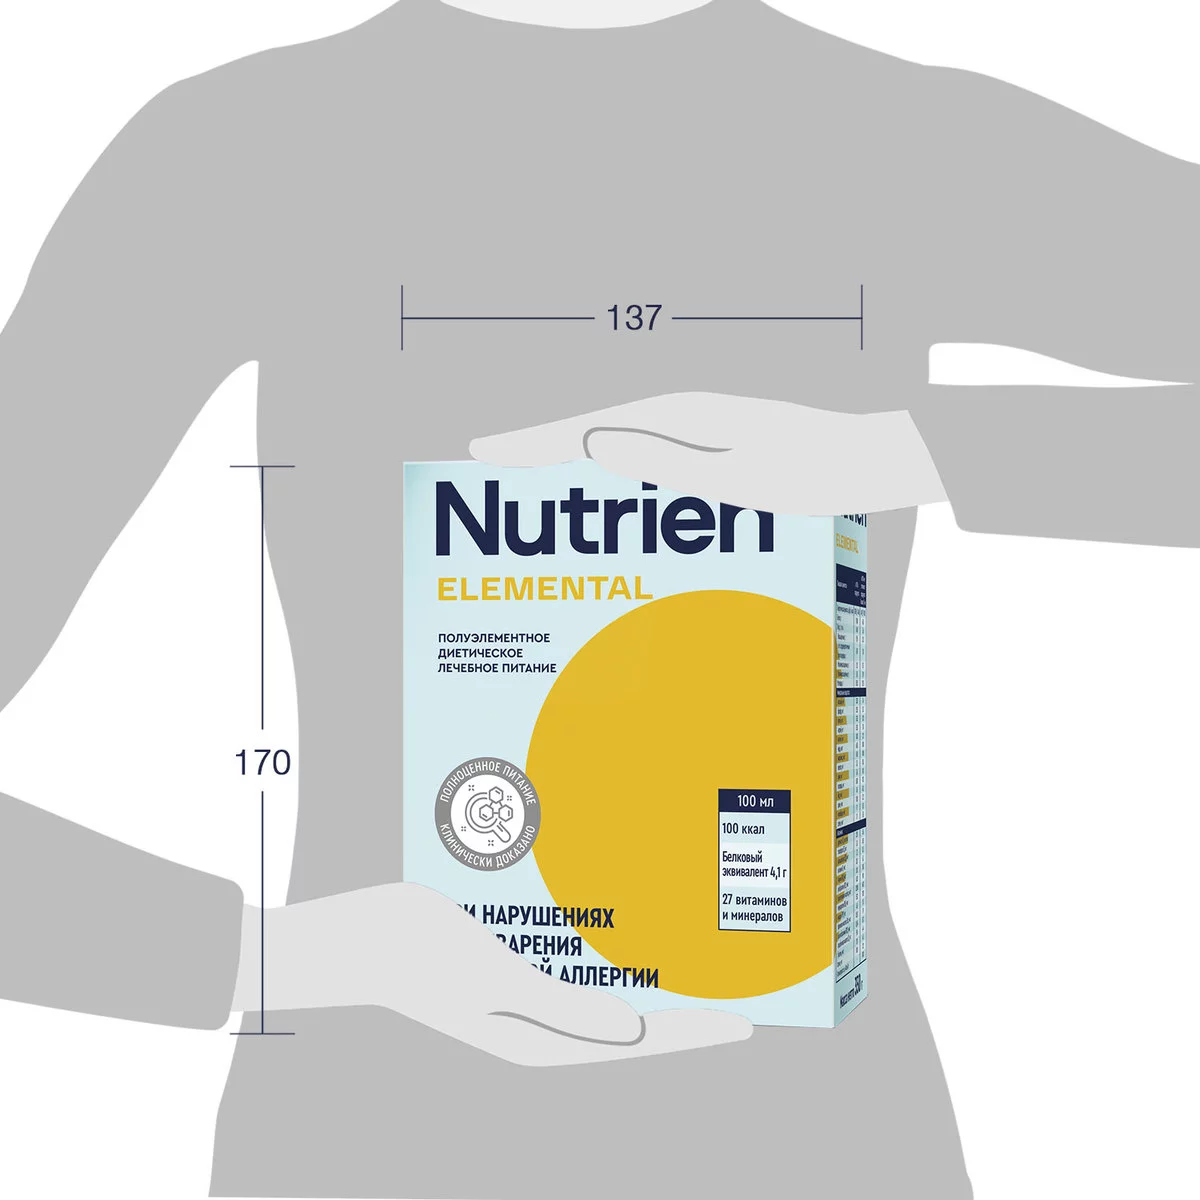 Nutrien Elemental - 12